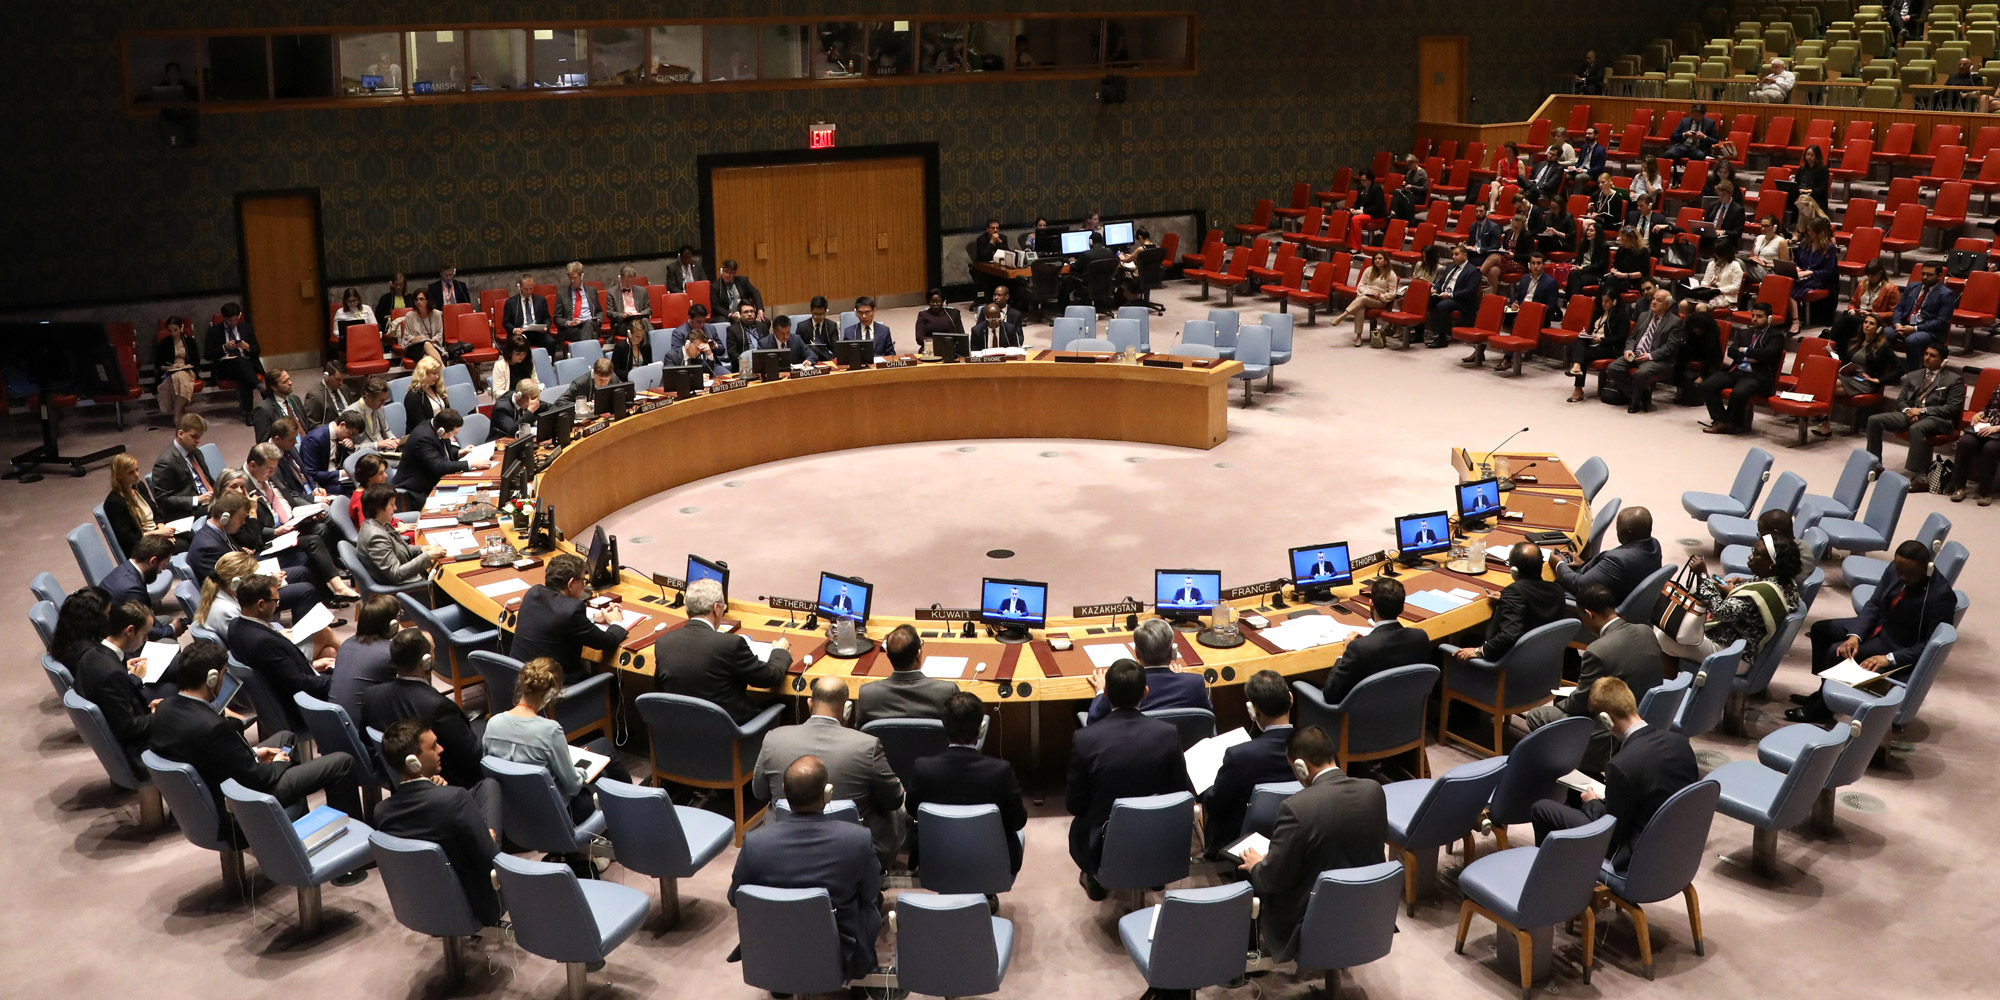 ONU-Sahara : Le Maroc se félicite de l’adoption par le Conseil de Sécurité d’une résolution appuyant son plan d’autonomie pour le Sahara 